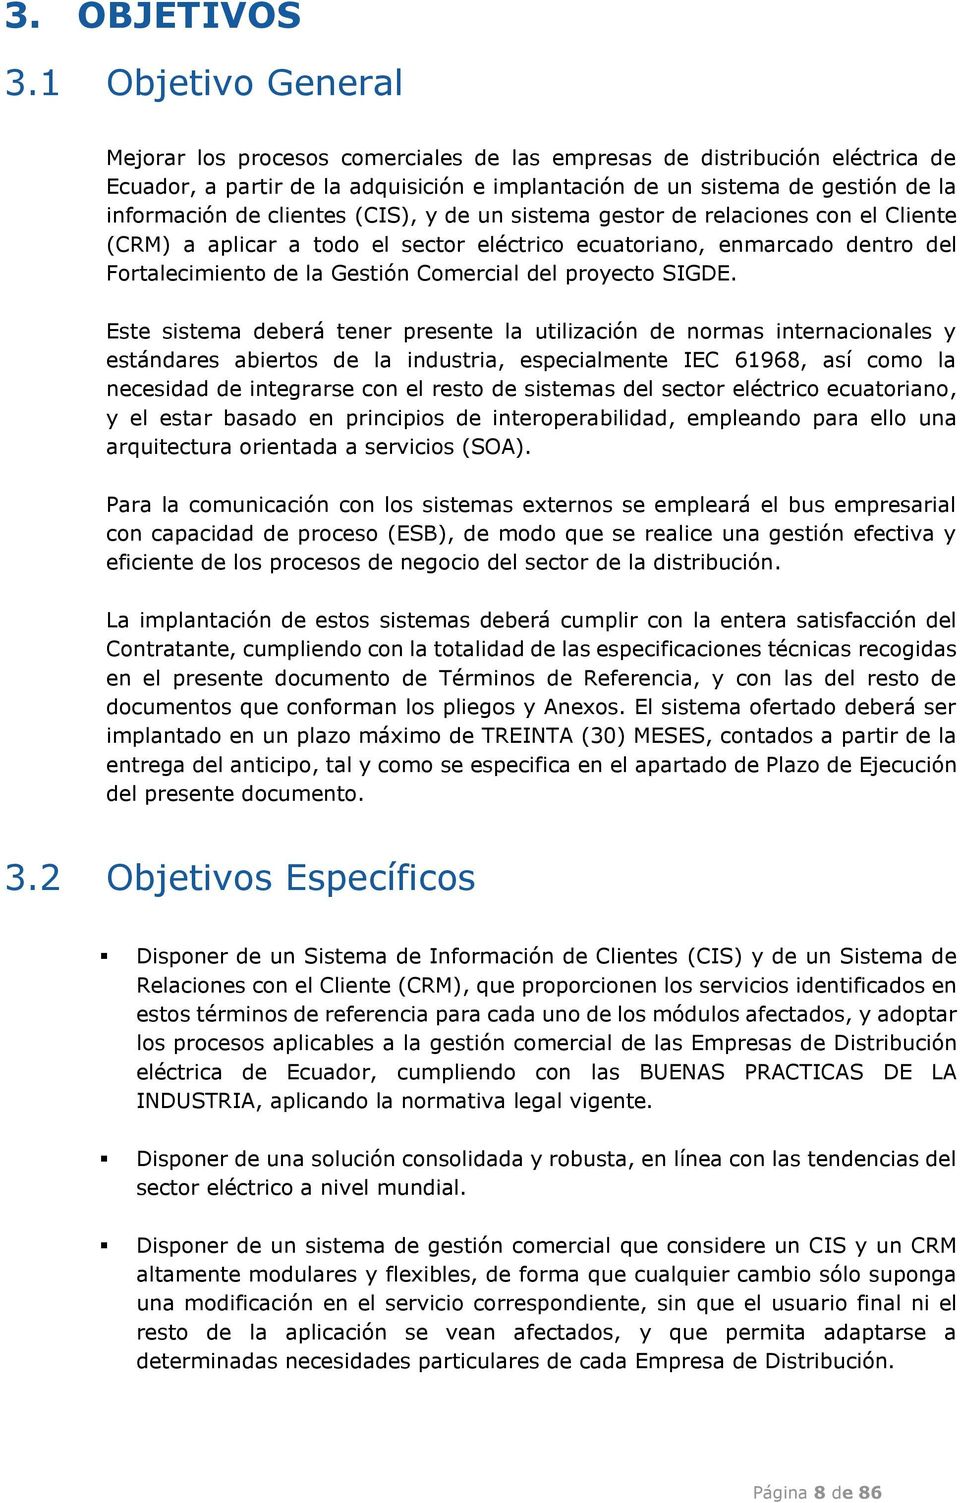 clientes (CIS), y de un sistema gestor de relaciones con el Cliente (CRM) a aplicar a todo el sector eléctrico ecuatoriano, enmarcado dentro del Fortalecimiento de la Gestión Comercial del proyecto